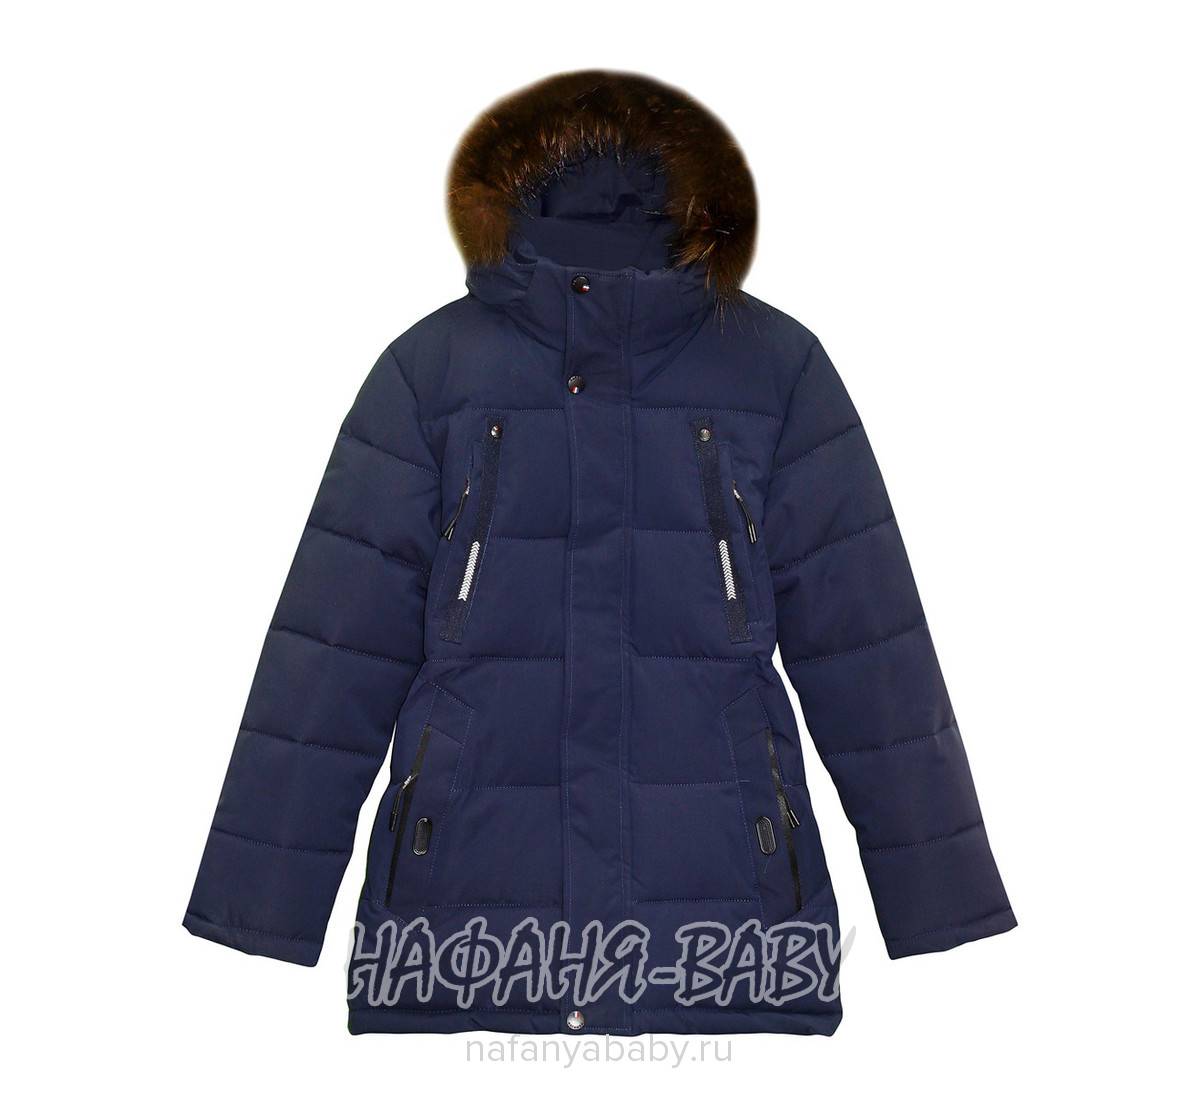 Зимняя куртка + наушники для мальчика Ф*А, купить в интернет магазине Нафаня. арт: 582.